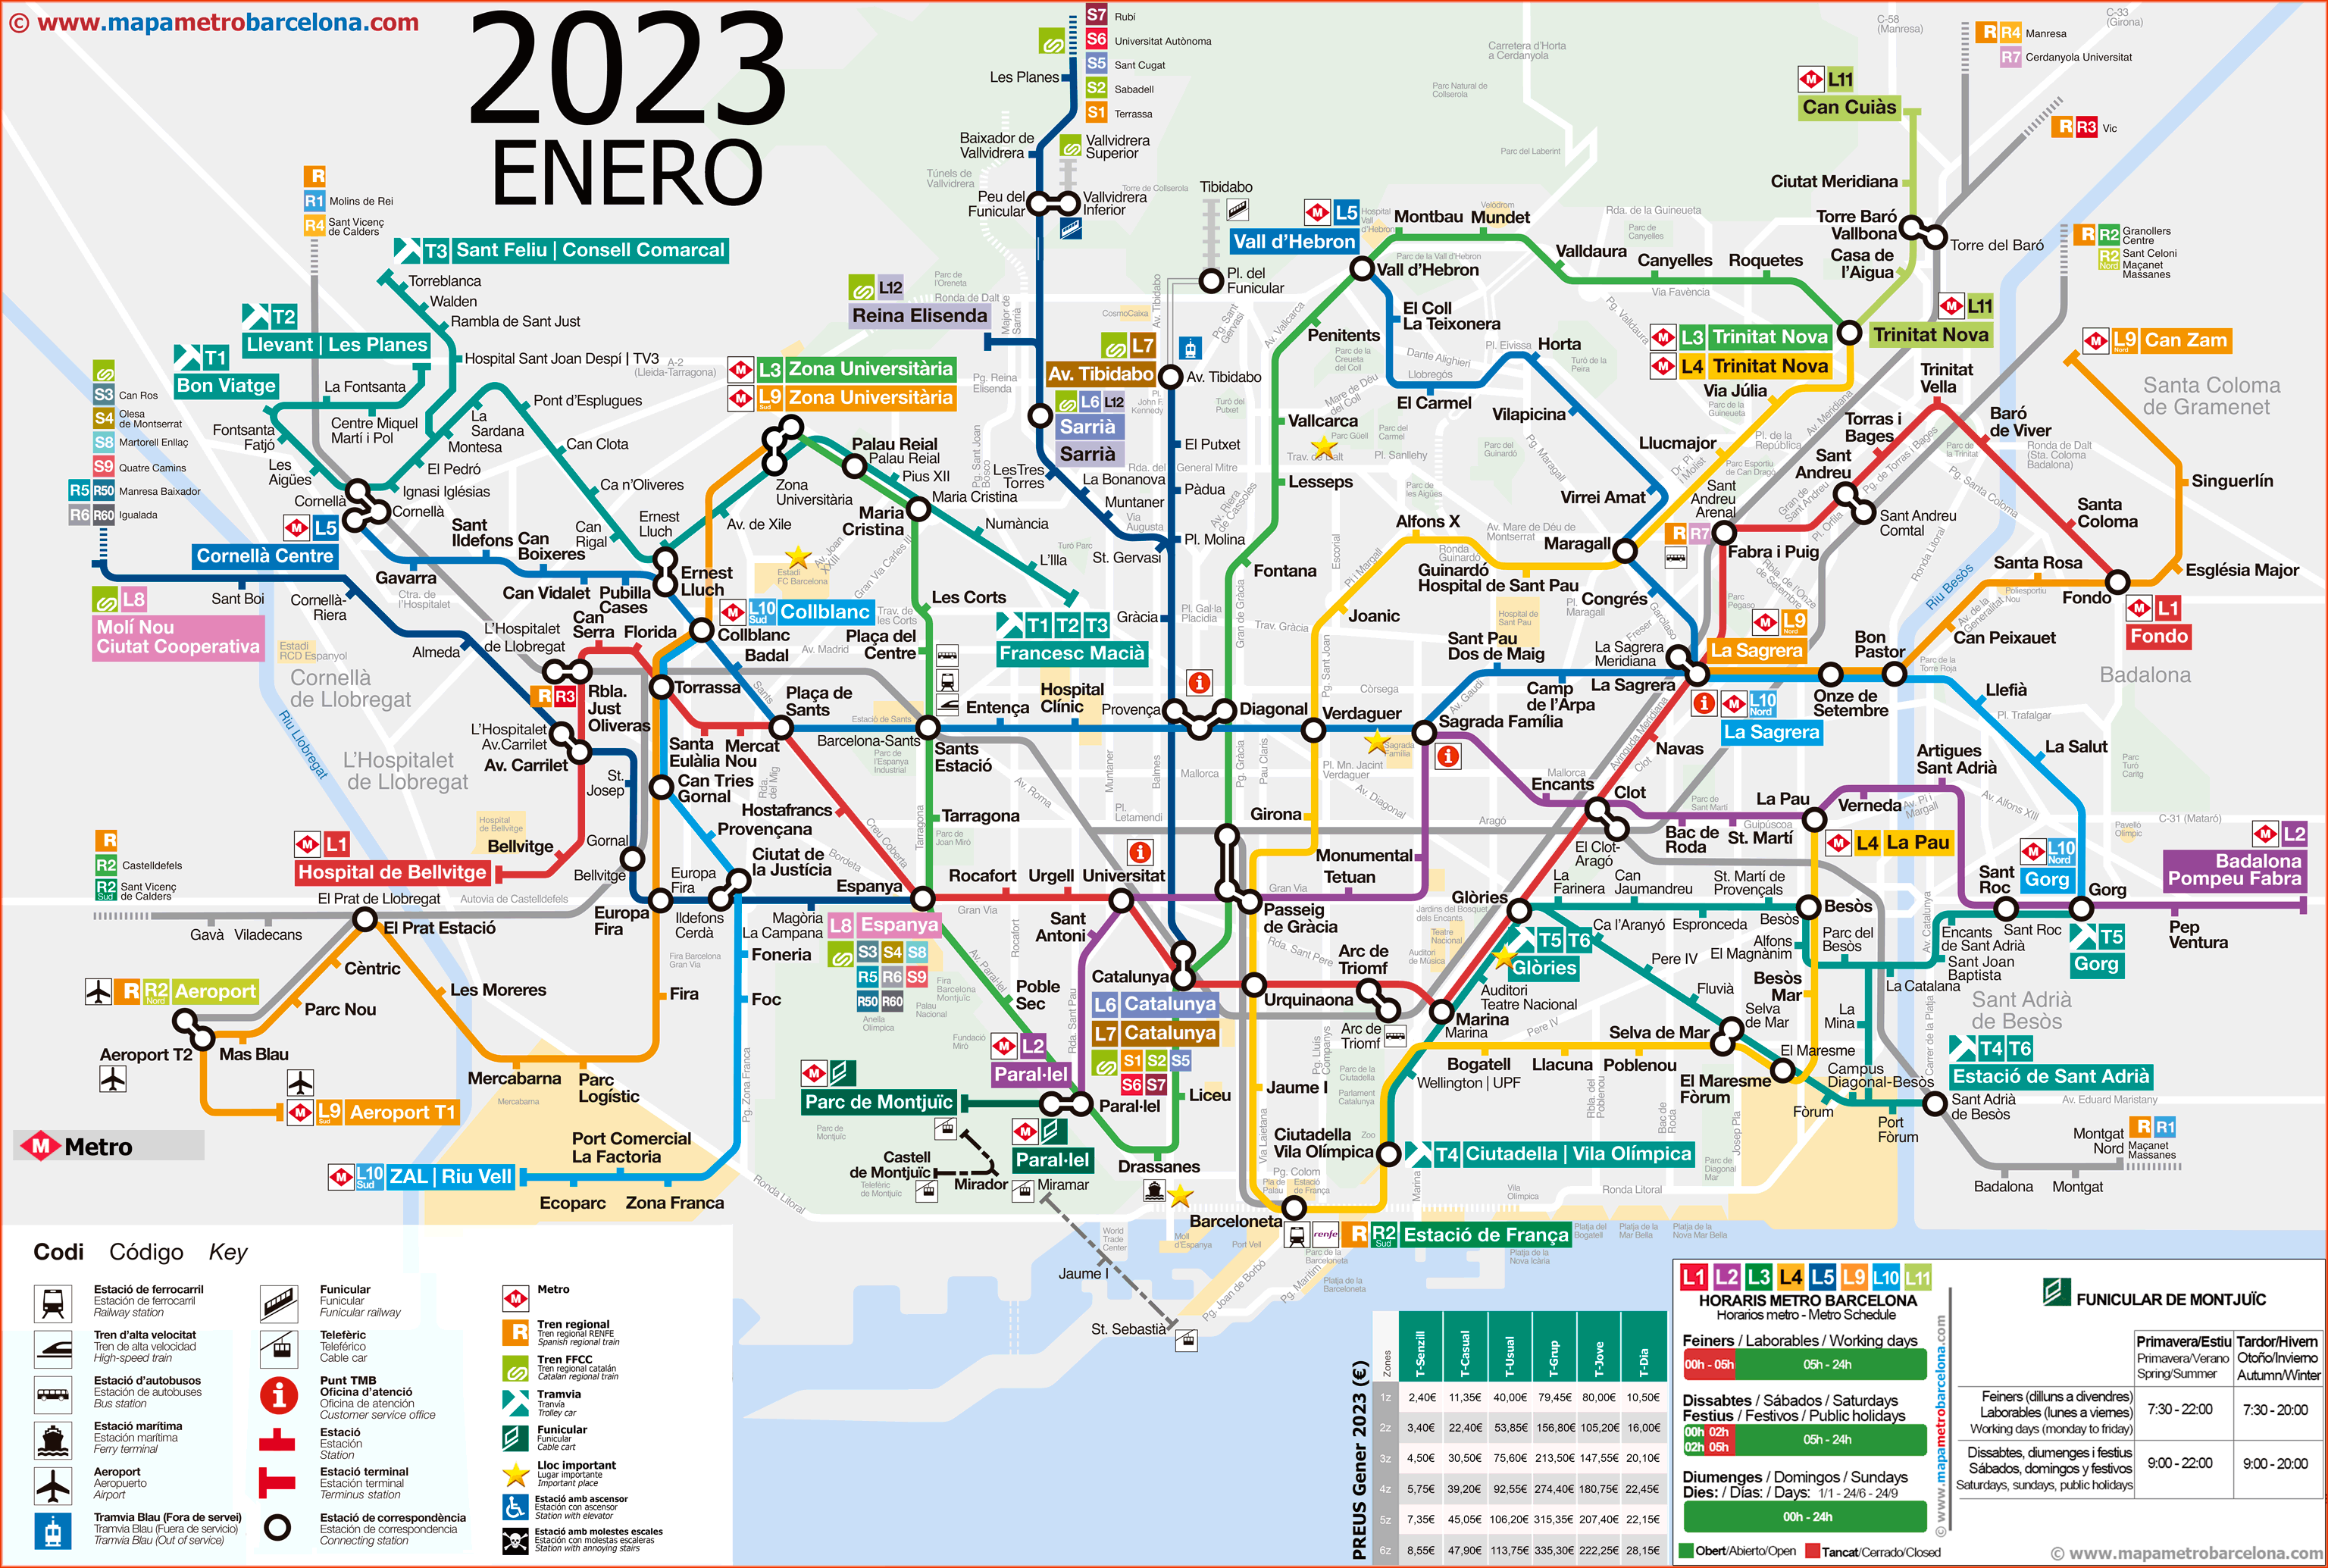 Mapa metro Barcelona, actualizado en 2023